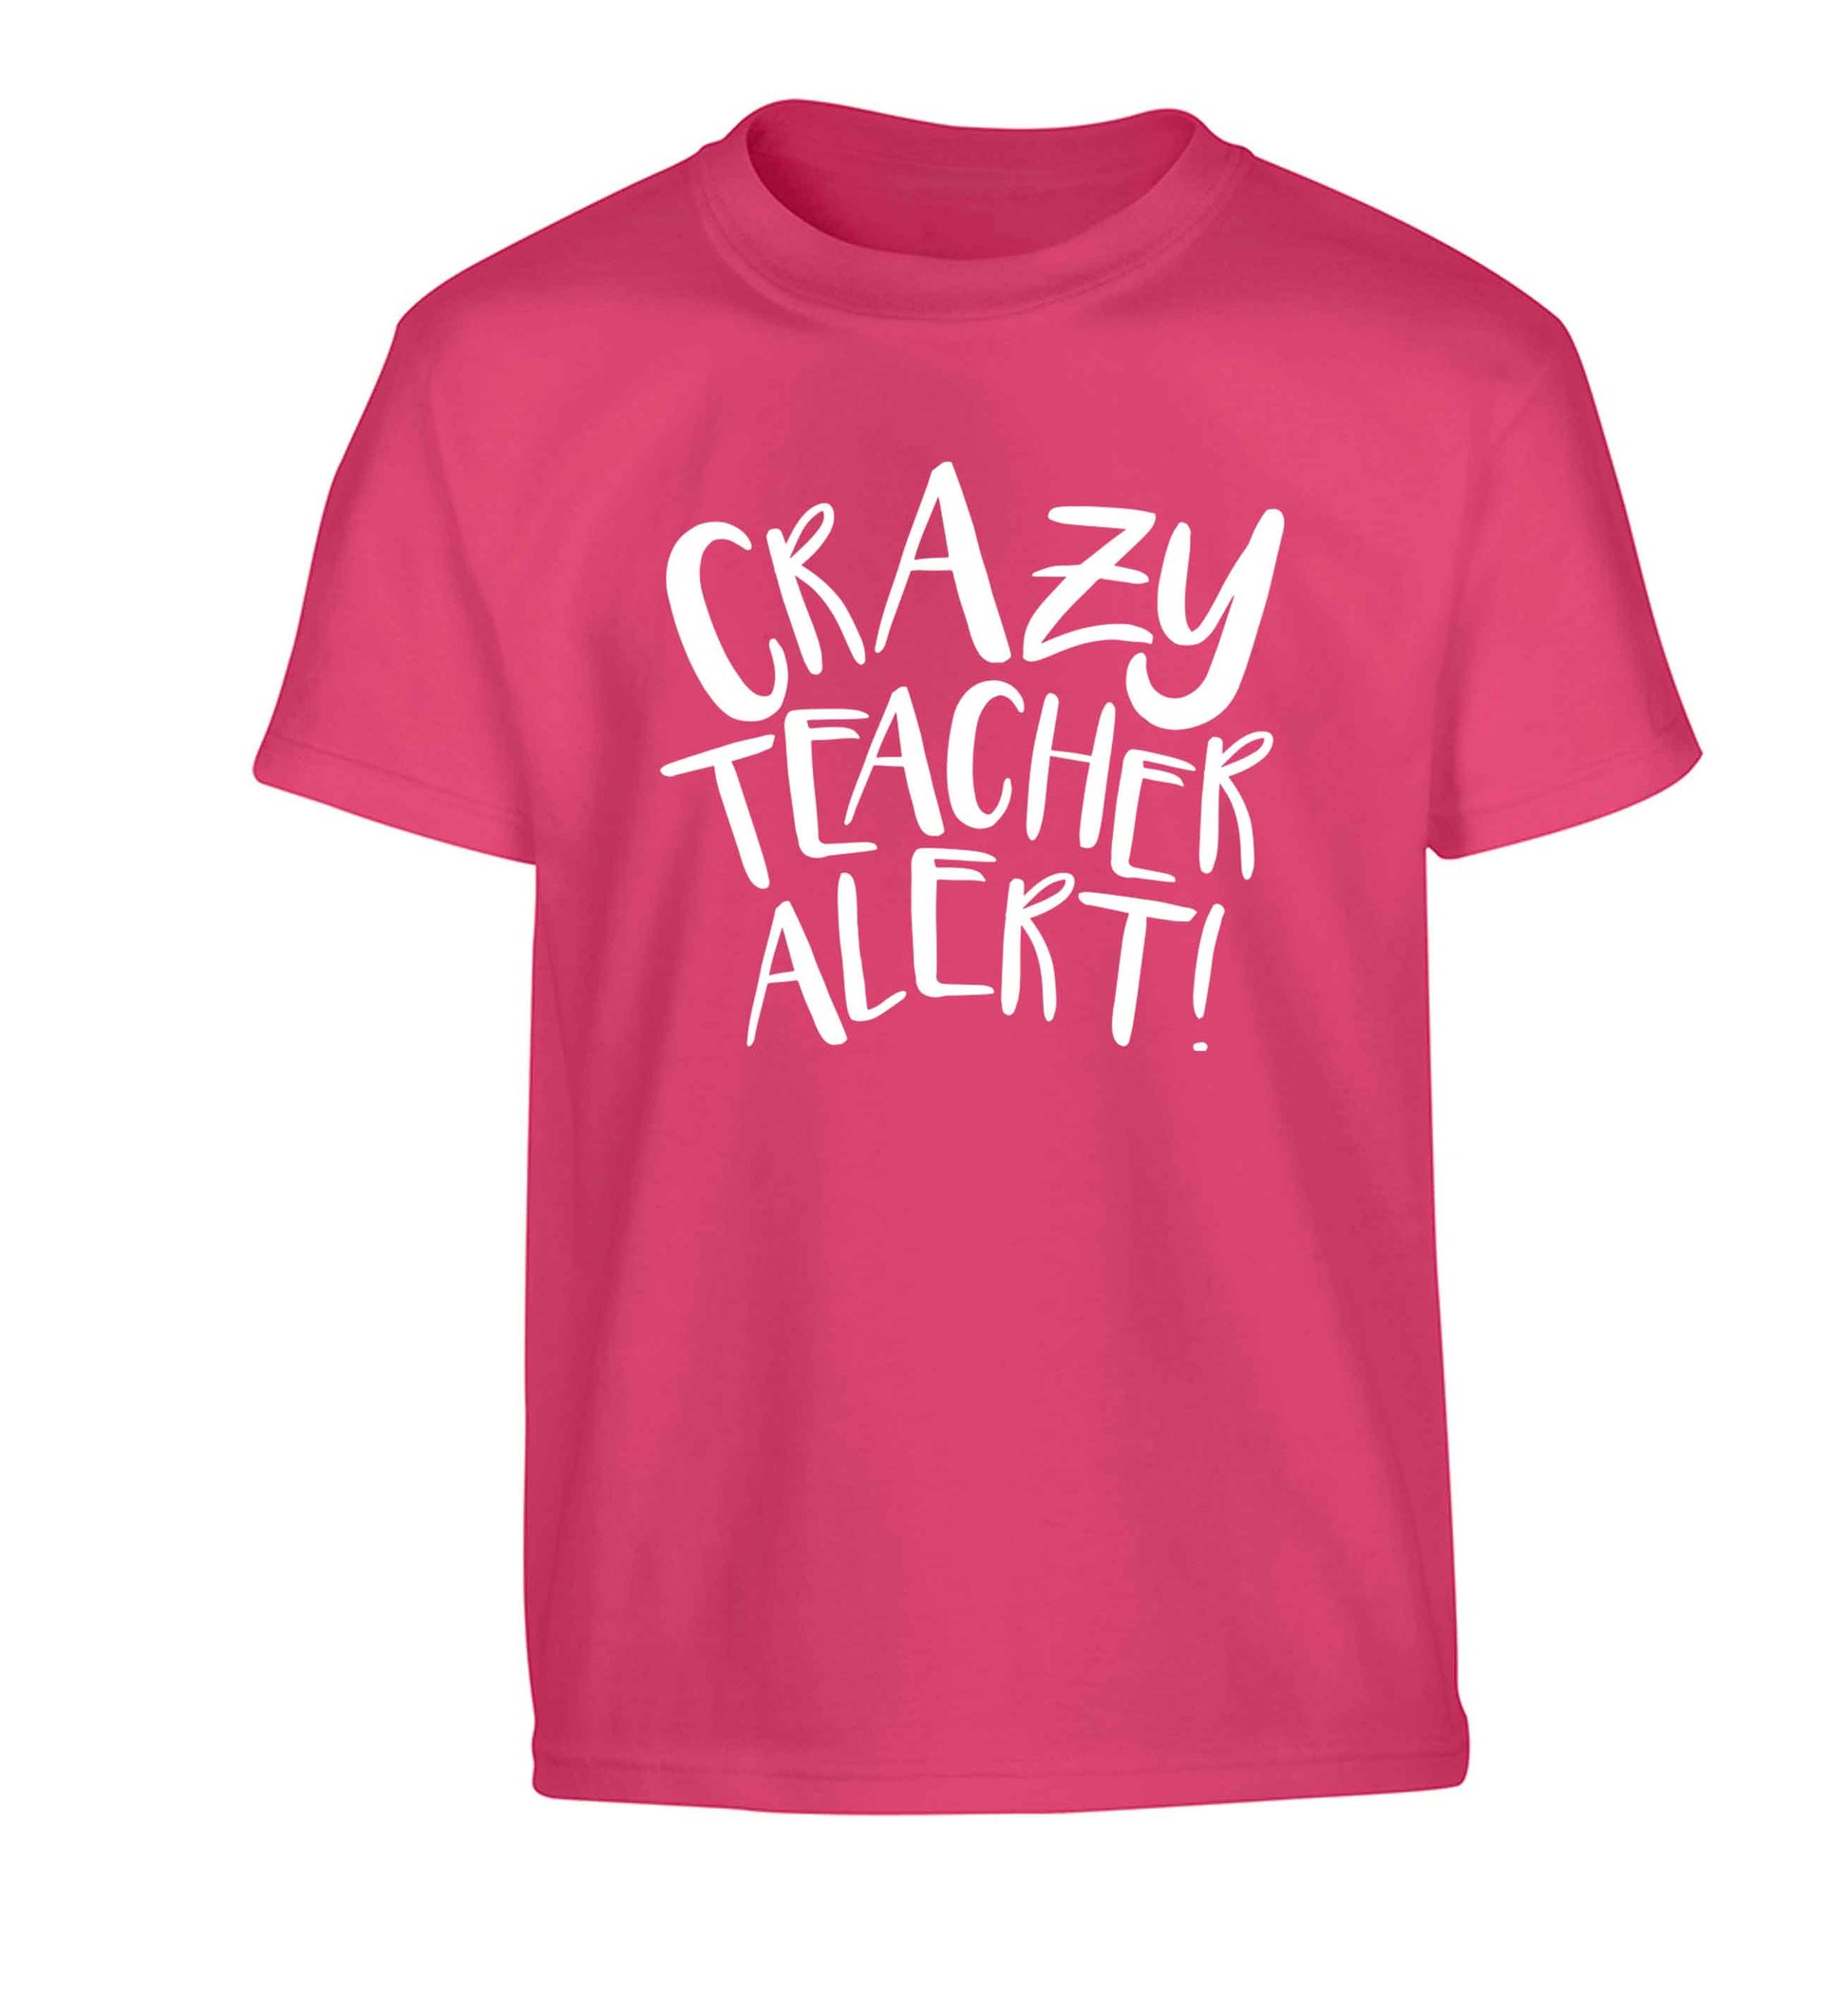 Crazy teacher alert Children's pink Tshirt 12-13 Years